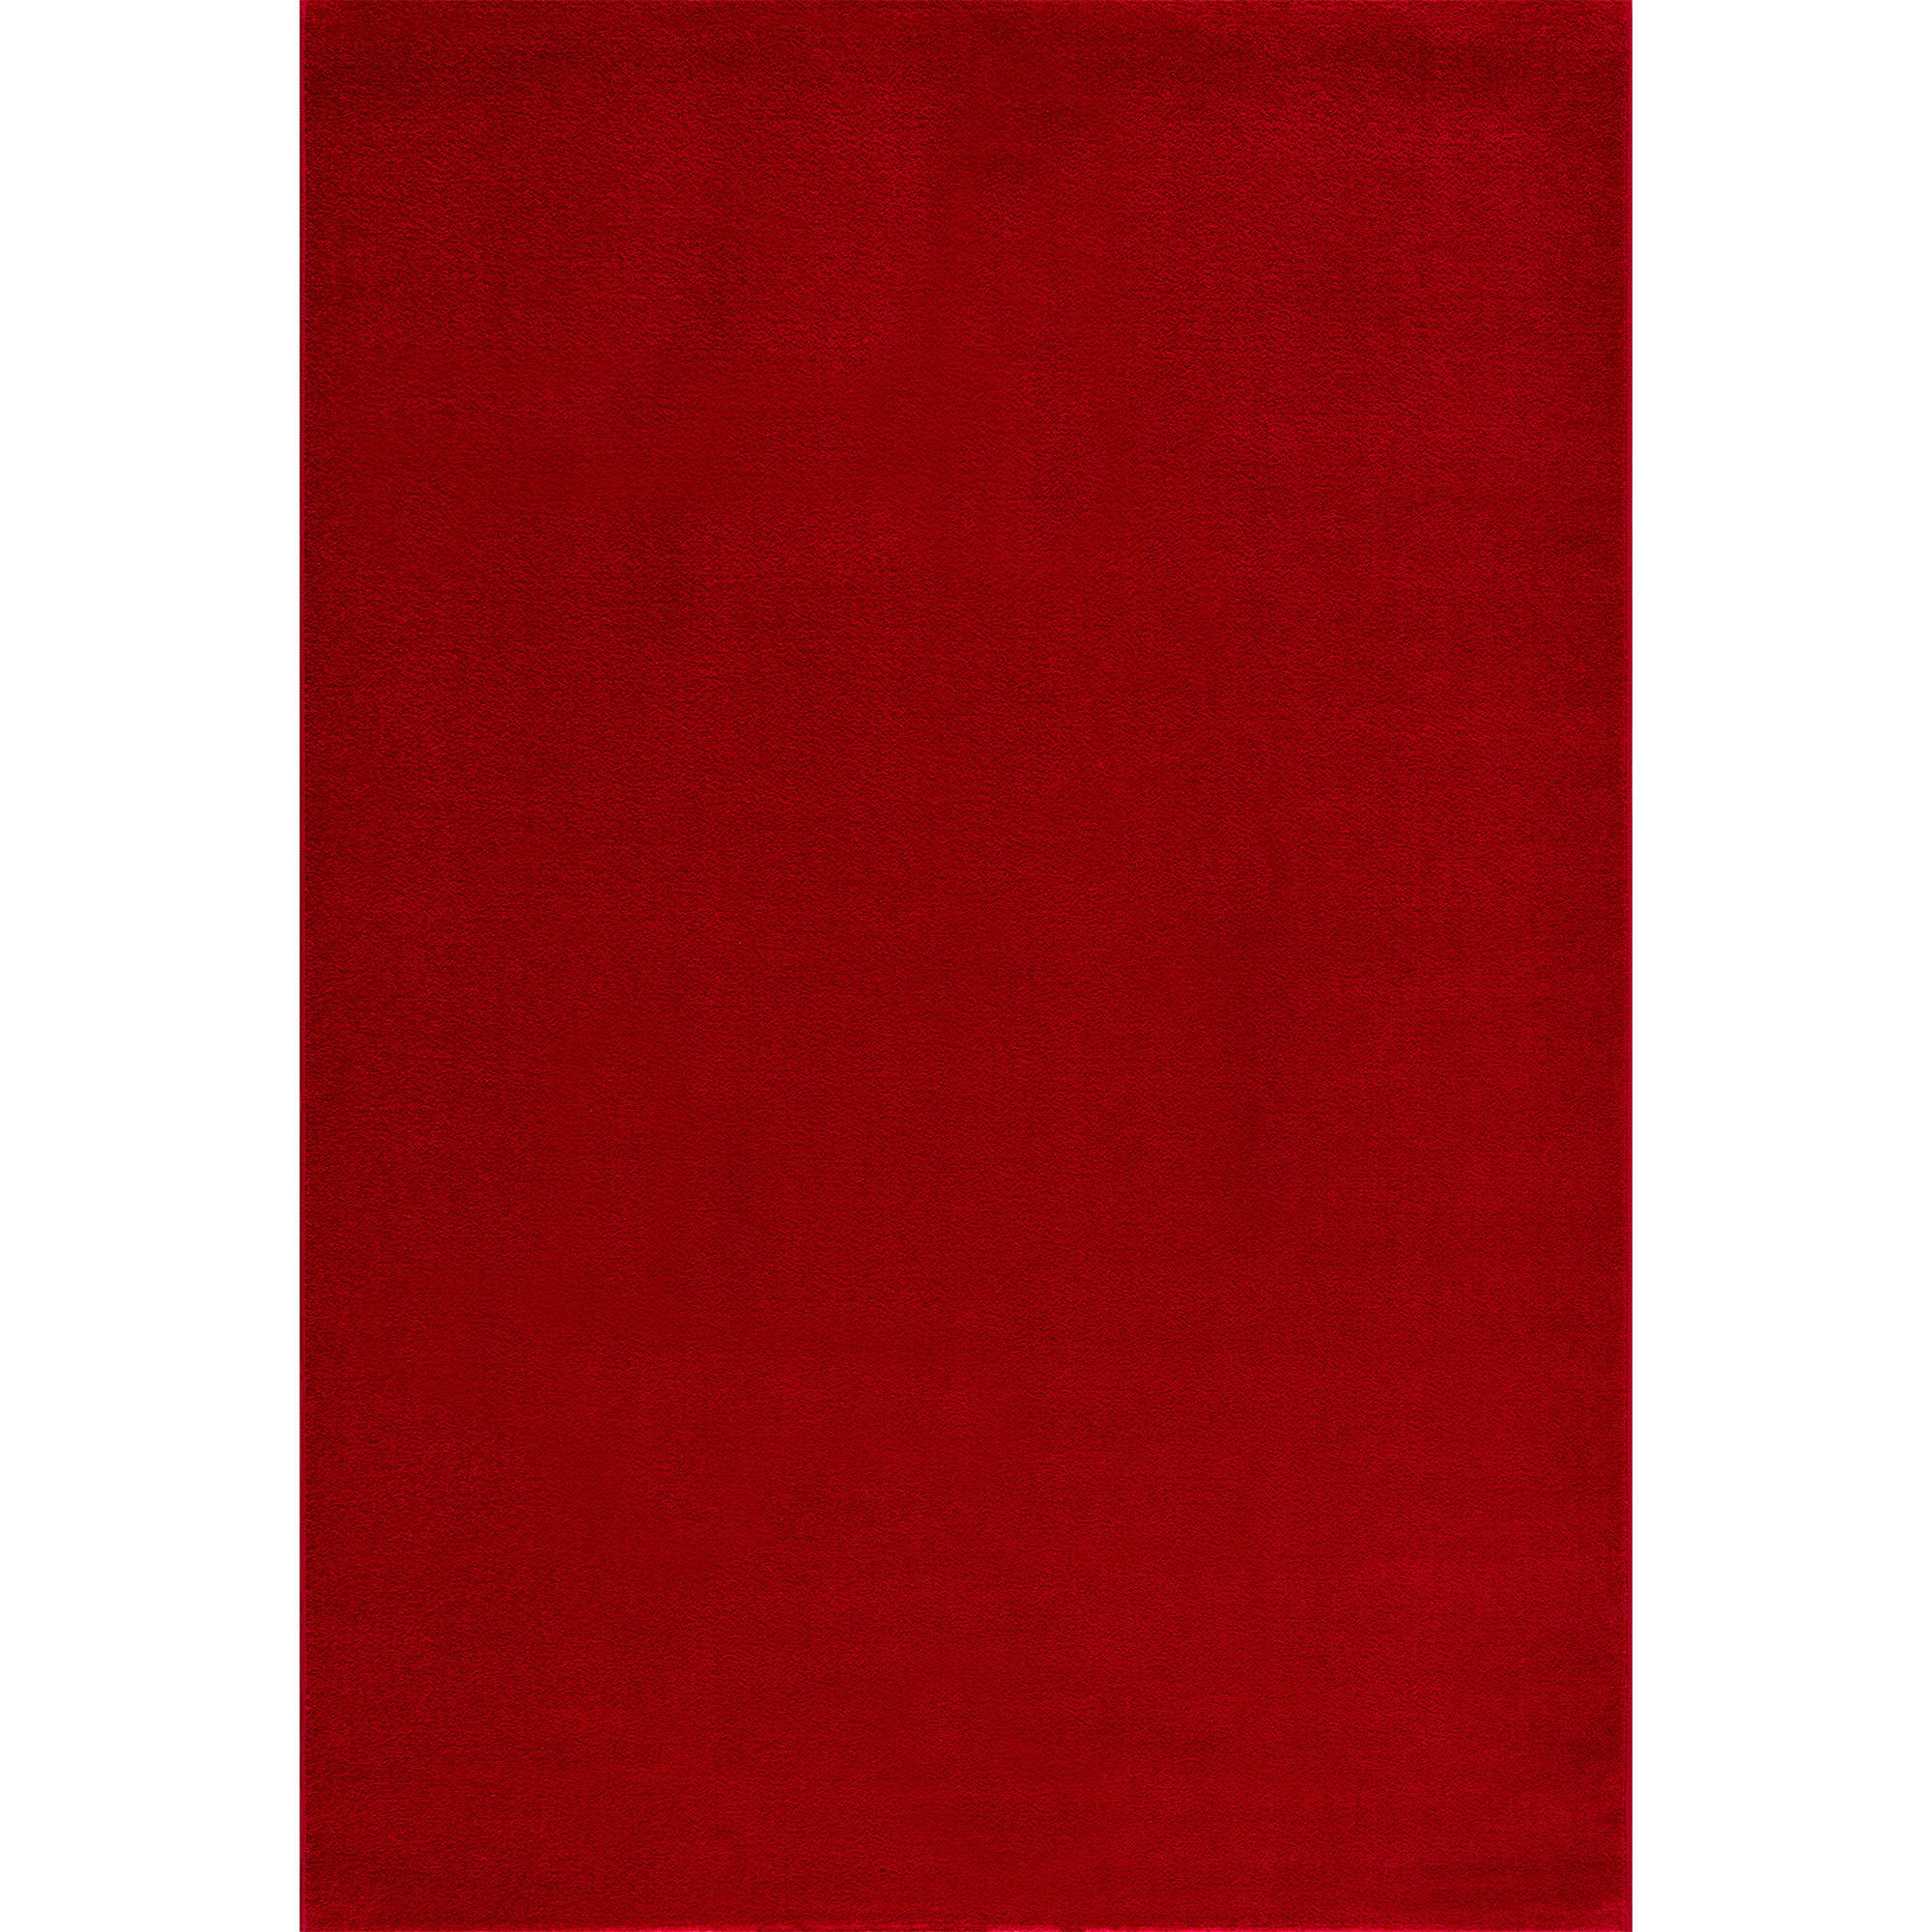 WEBTEPPICH 60/110 cm Uni  - Rot, LIFESTYLE, Kunststoff/Textil (60/110cm) - Novel